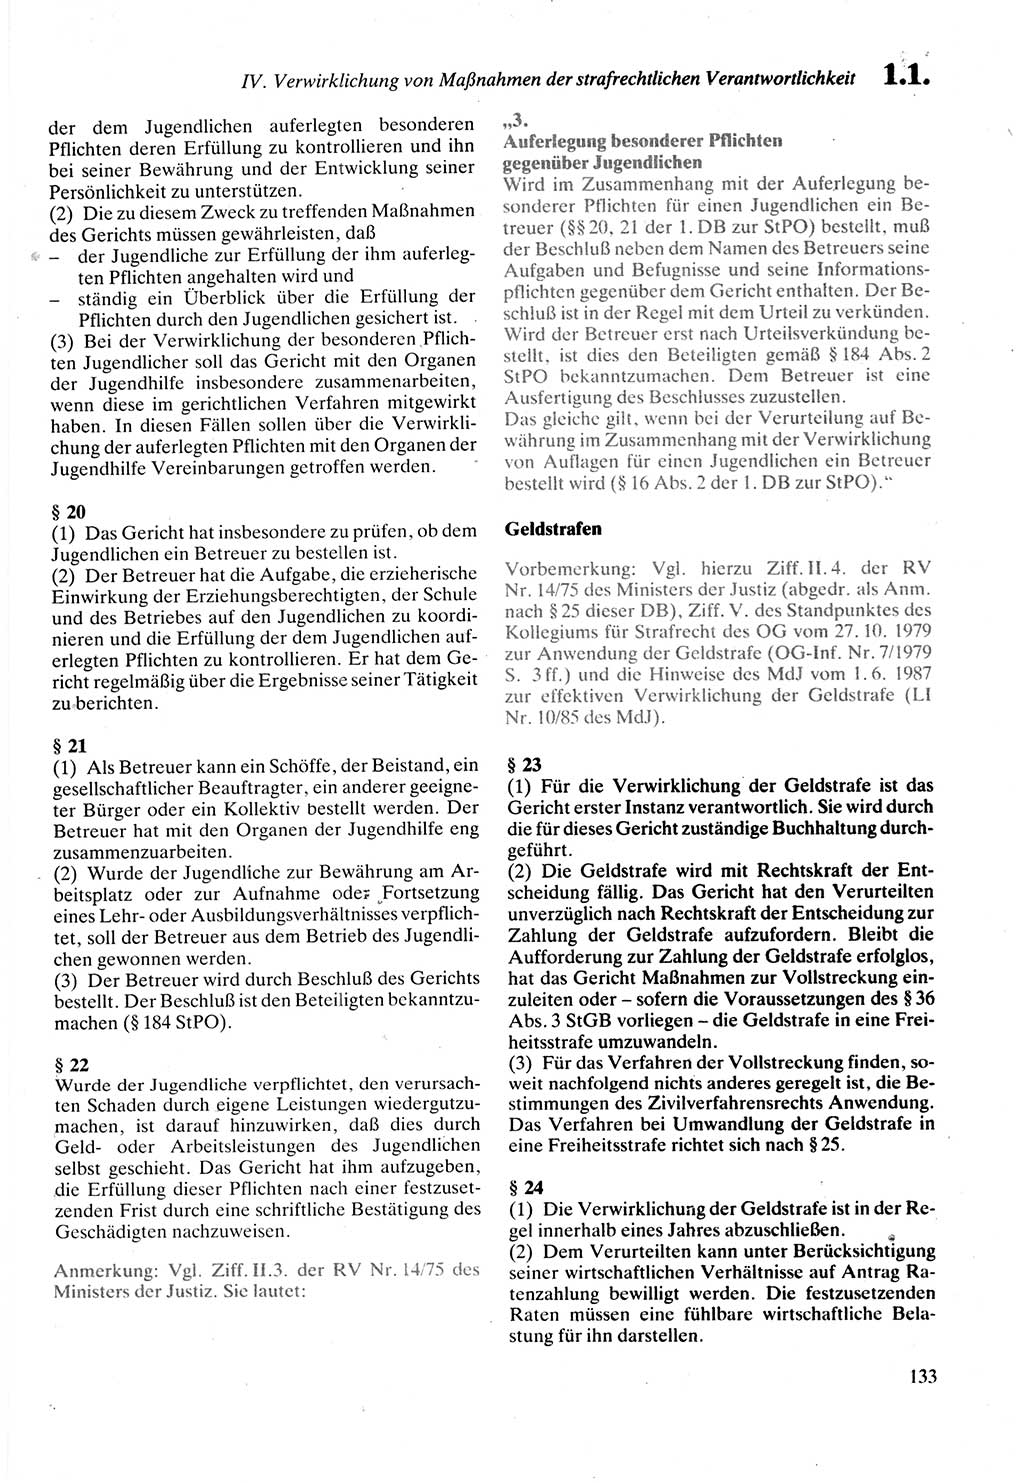 Strafprozeßordnung (StPO) der Deutschen Demokratischen Republik (DDR) sowie angrenzende Gesetze und Bestimmungen 1987, Seite 133 (StPO DDR Ges. Best. 1987, S. 133)